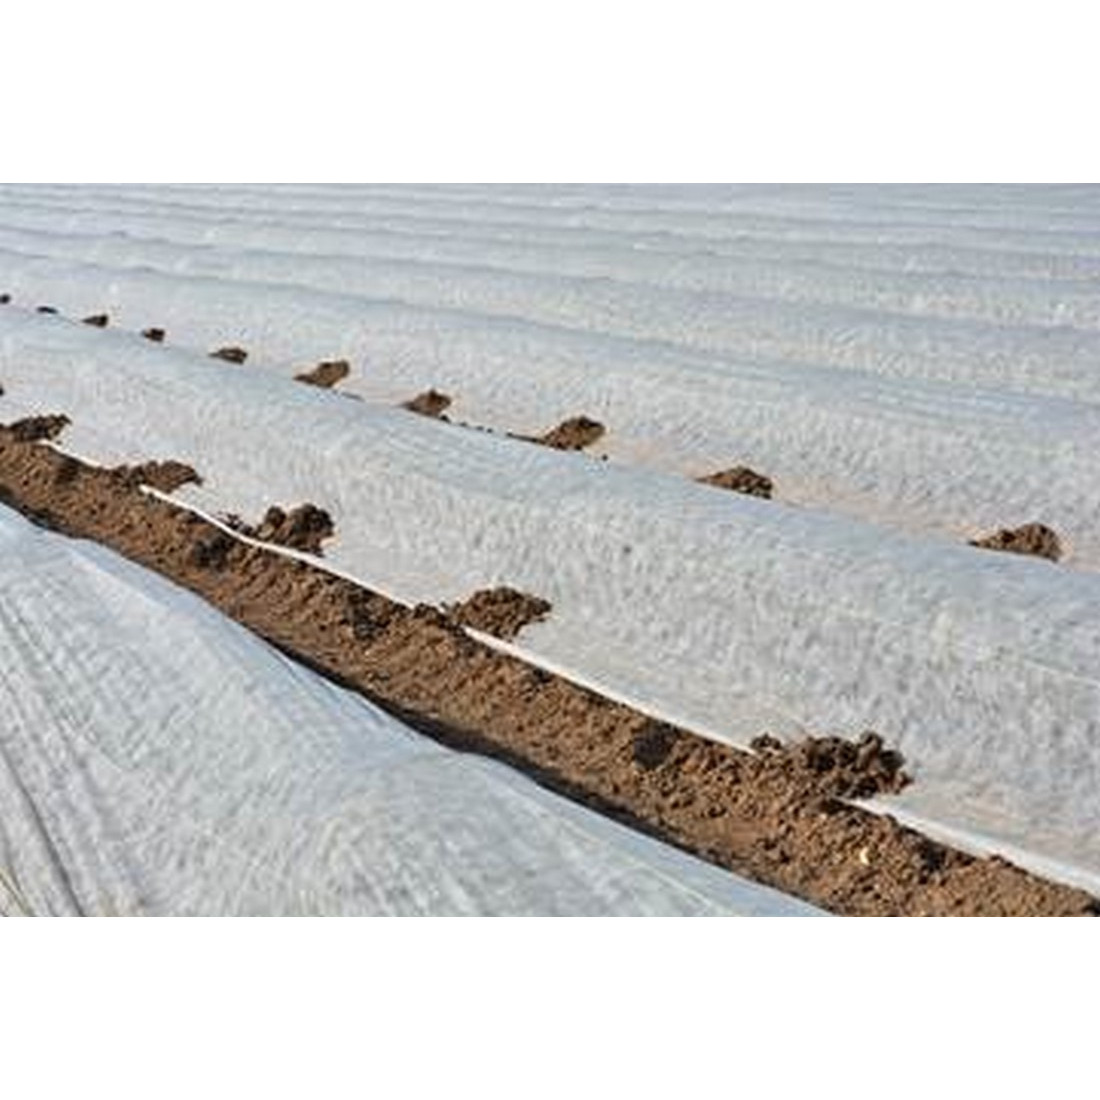 Manta térmica agrícola Rollos 250m, Tienda online